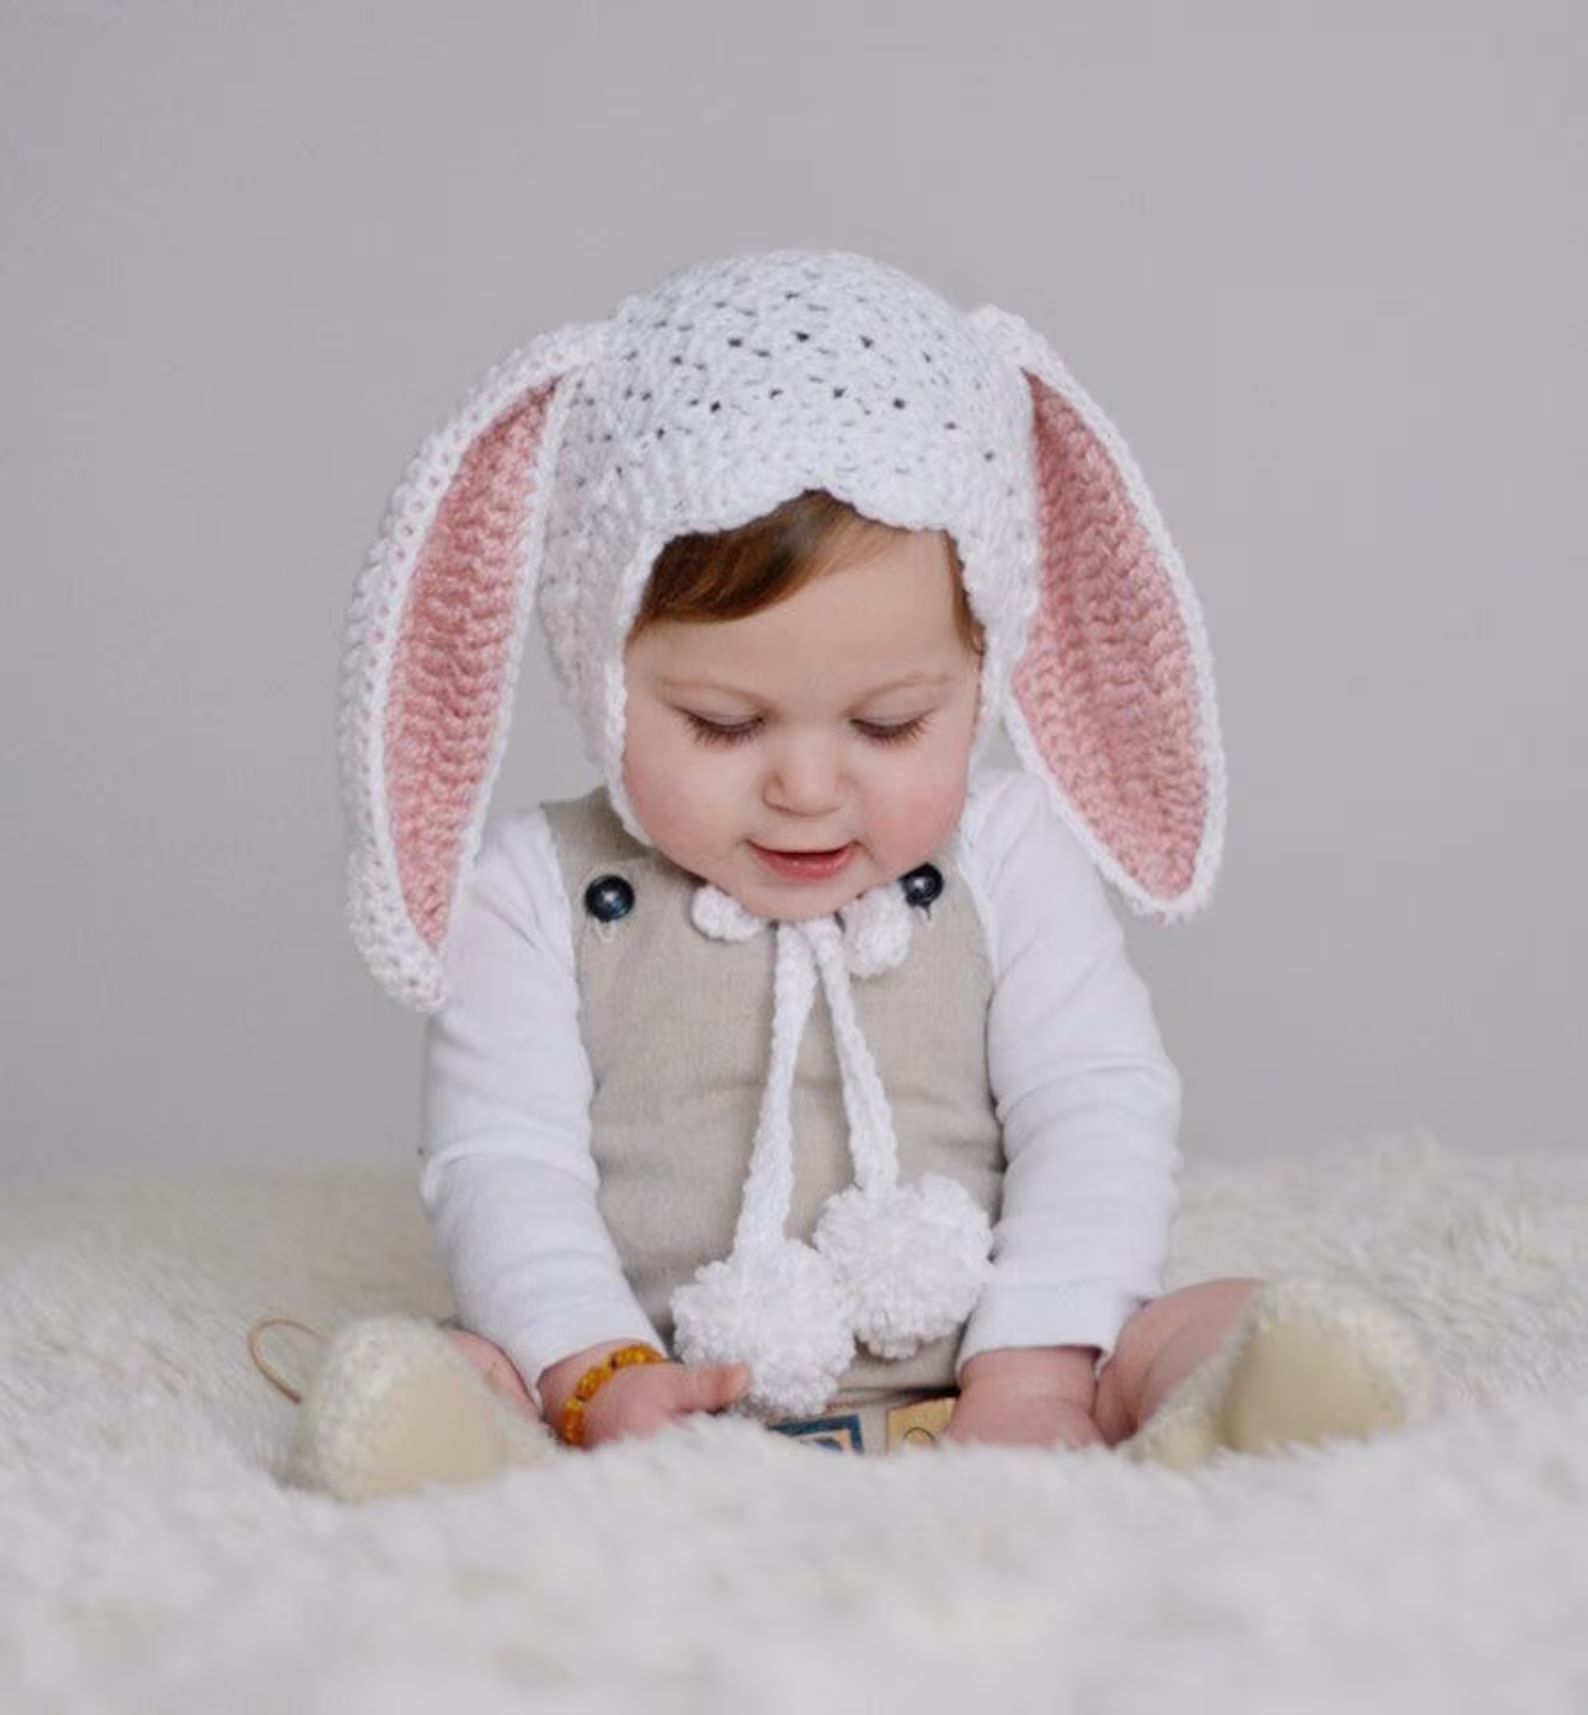 Easter bunny bonnet handmade. Crochet/knit. Baby hat. Gift. | Etsy (US)